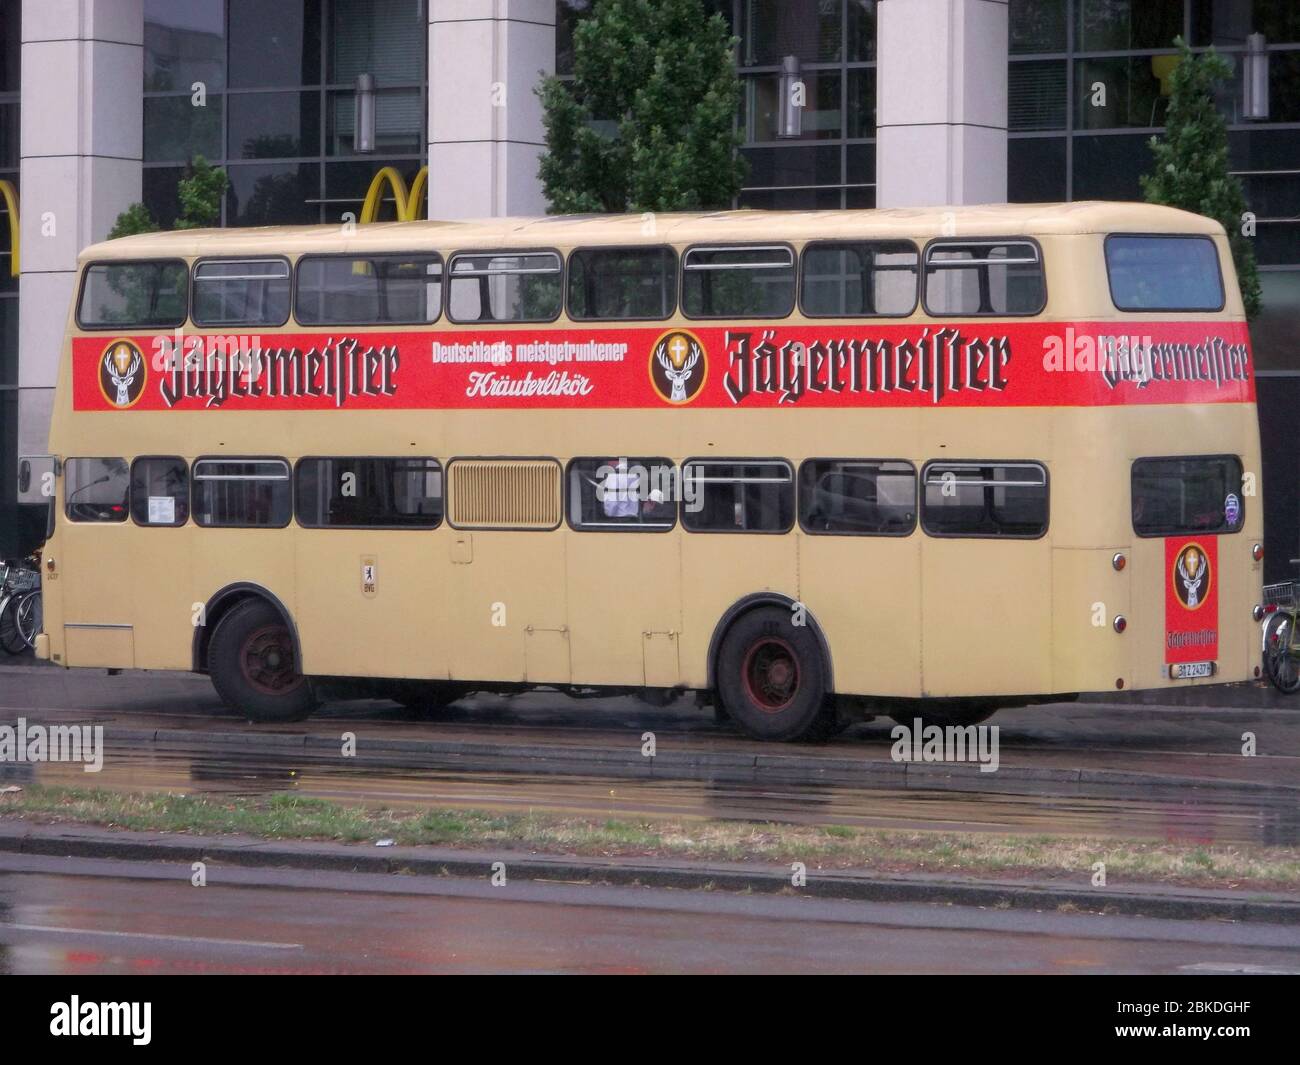 Ein von 1965 bis 1974 gebauter und seinerzeit im West-Berliner Stadtbild wit verbreiteter Autobus. Foto Stock